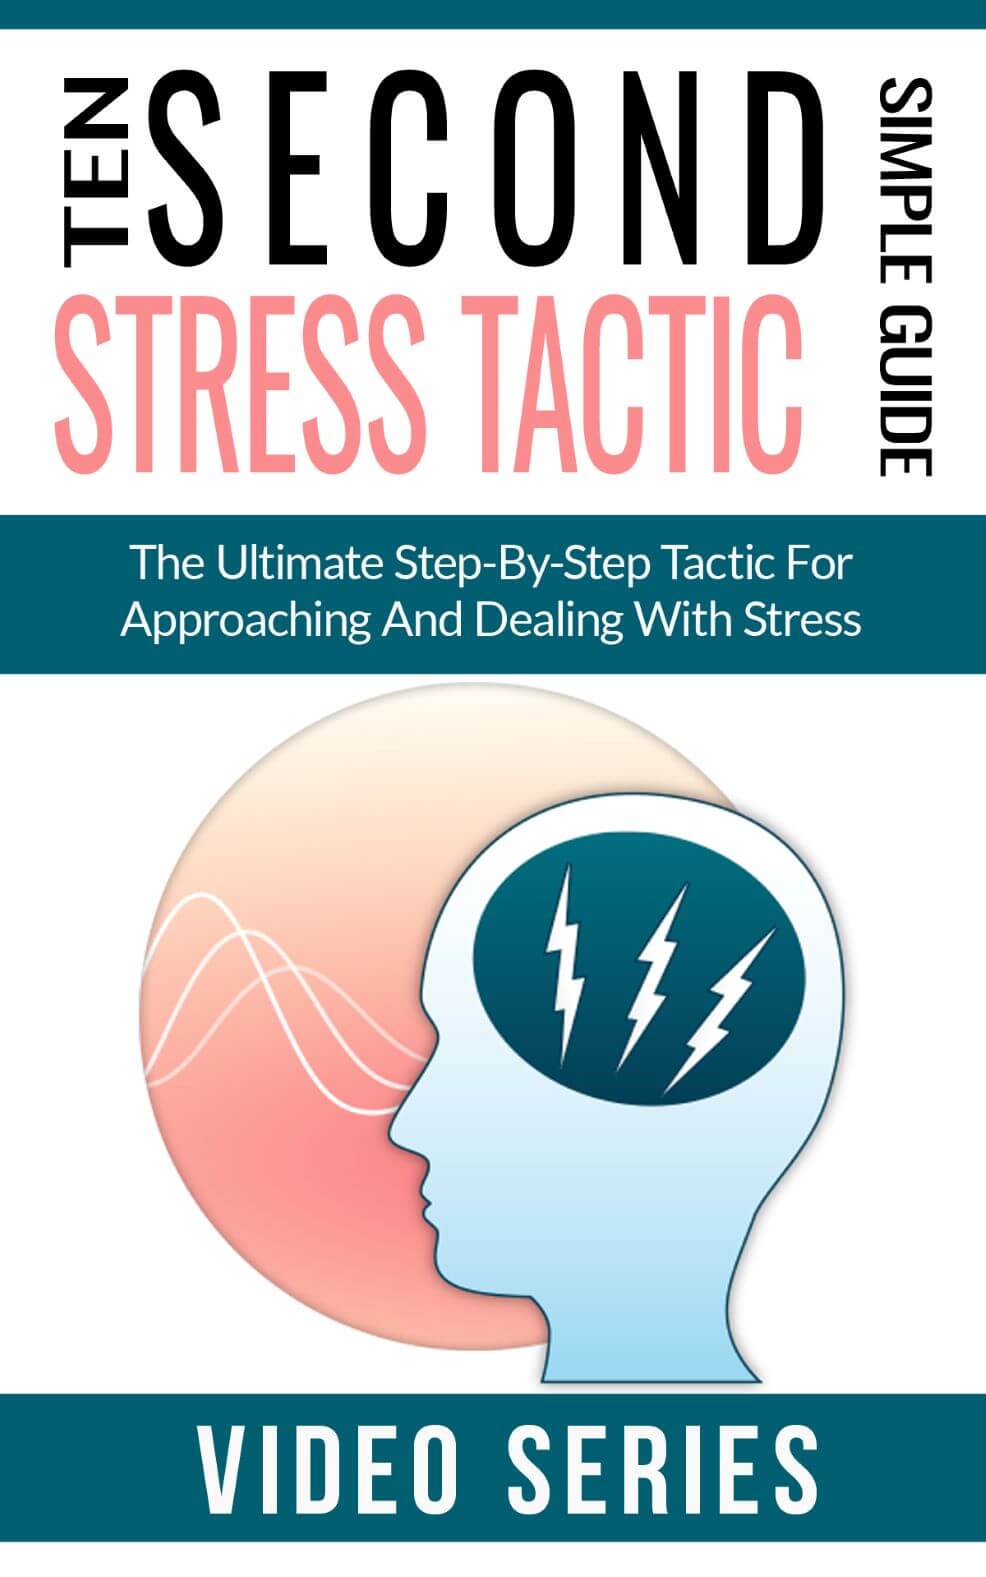 Ten Second Stress Tactic Videos